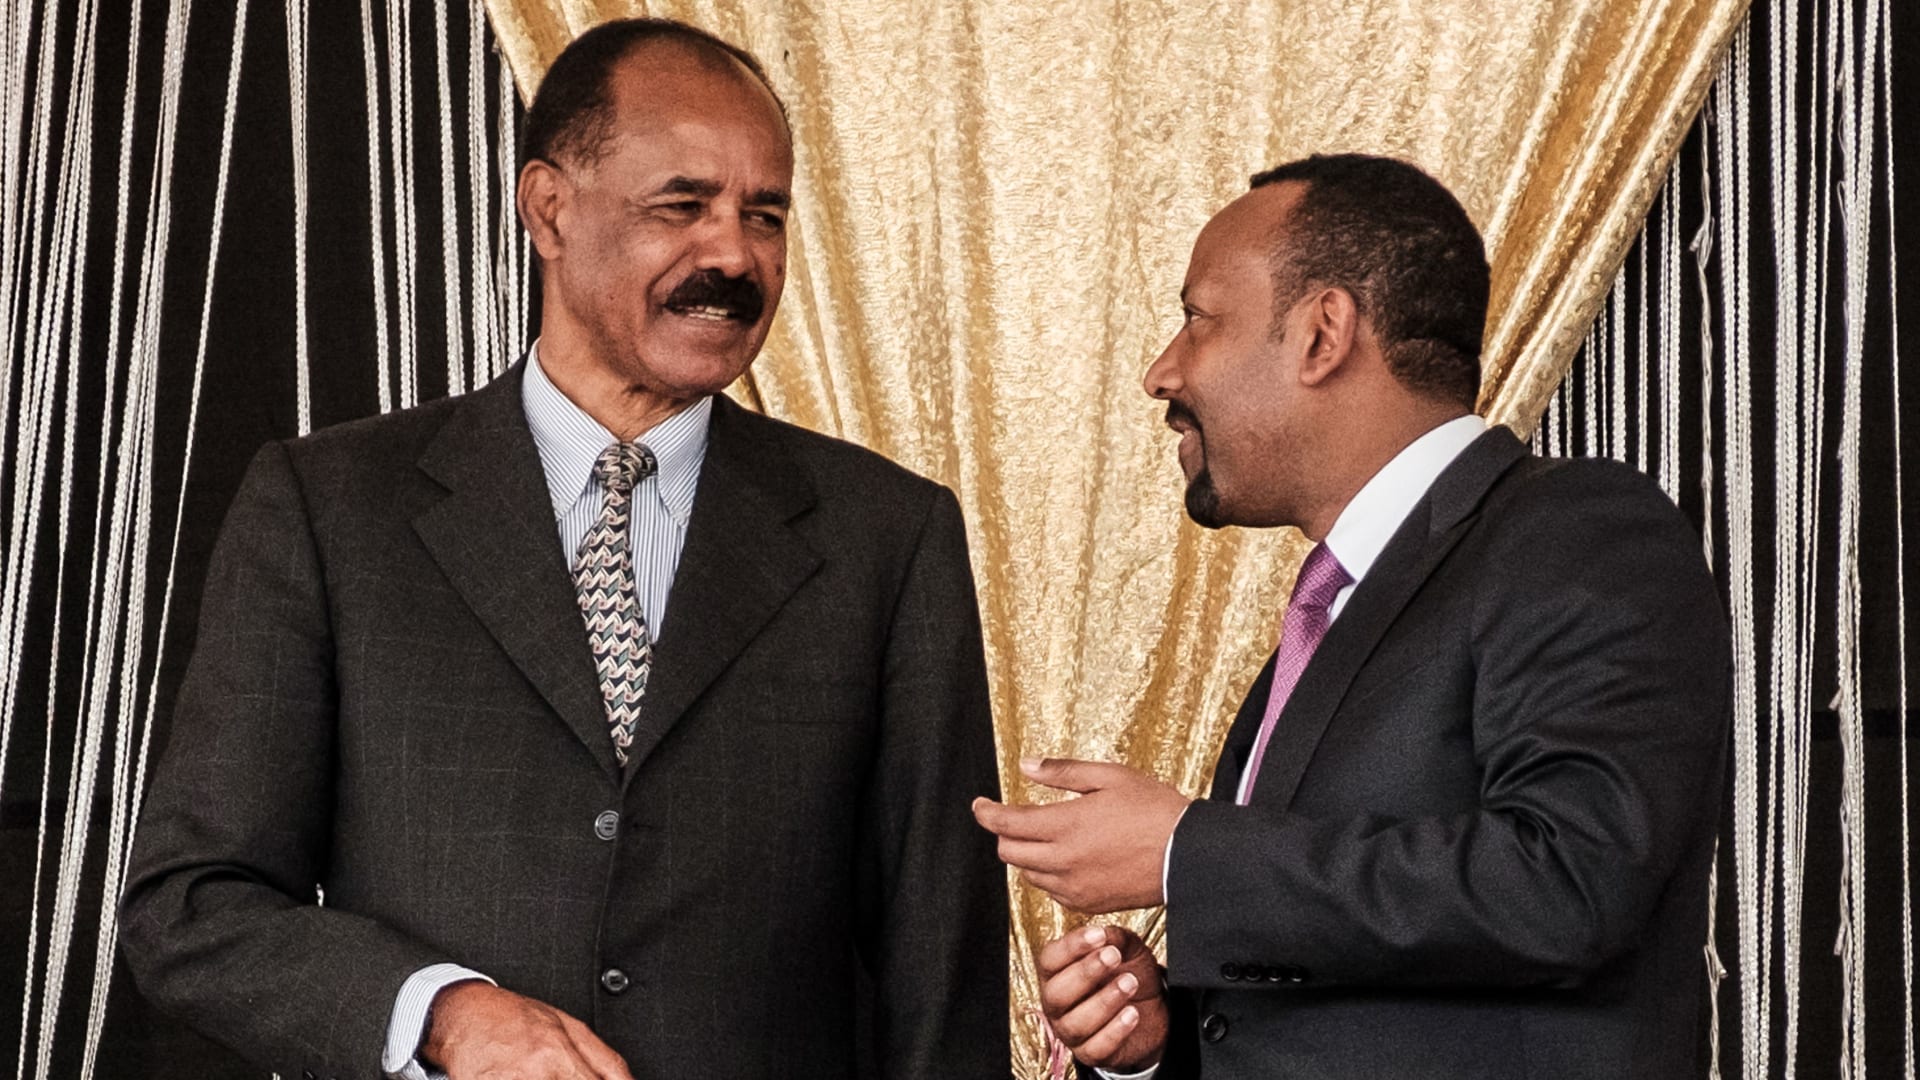 آبي أحمد يعترف بمشاركة إريتريا في حرب تيغراي ويعلن انسحابها